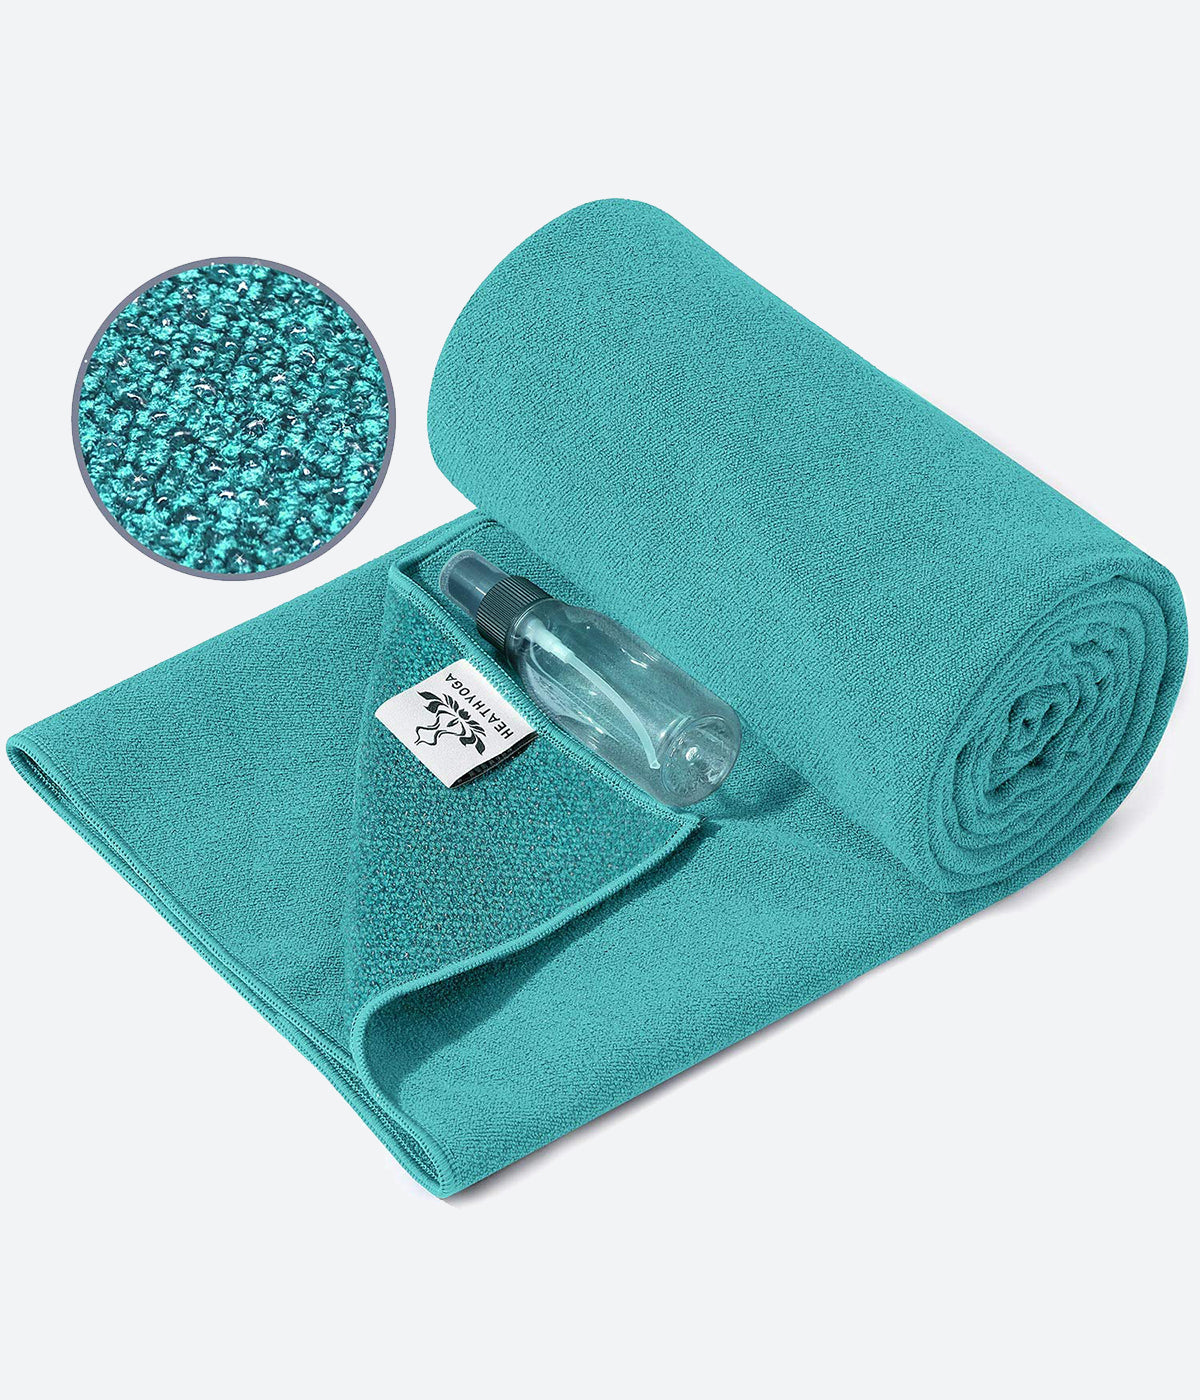 Yoga Towel Yoga Mat Towel Mat Towel Non Slip Yoga Towel Exercise Mat Towel  Yoga Towels Hot Yoga Towel Yoga Towels For Hot Yoga darkblue